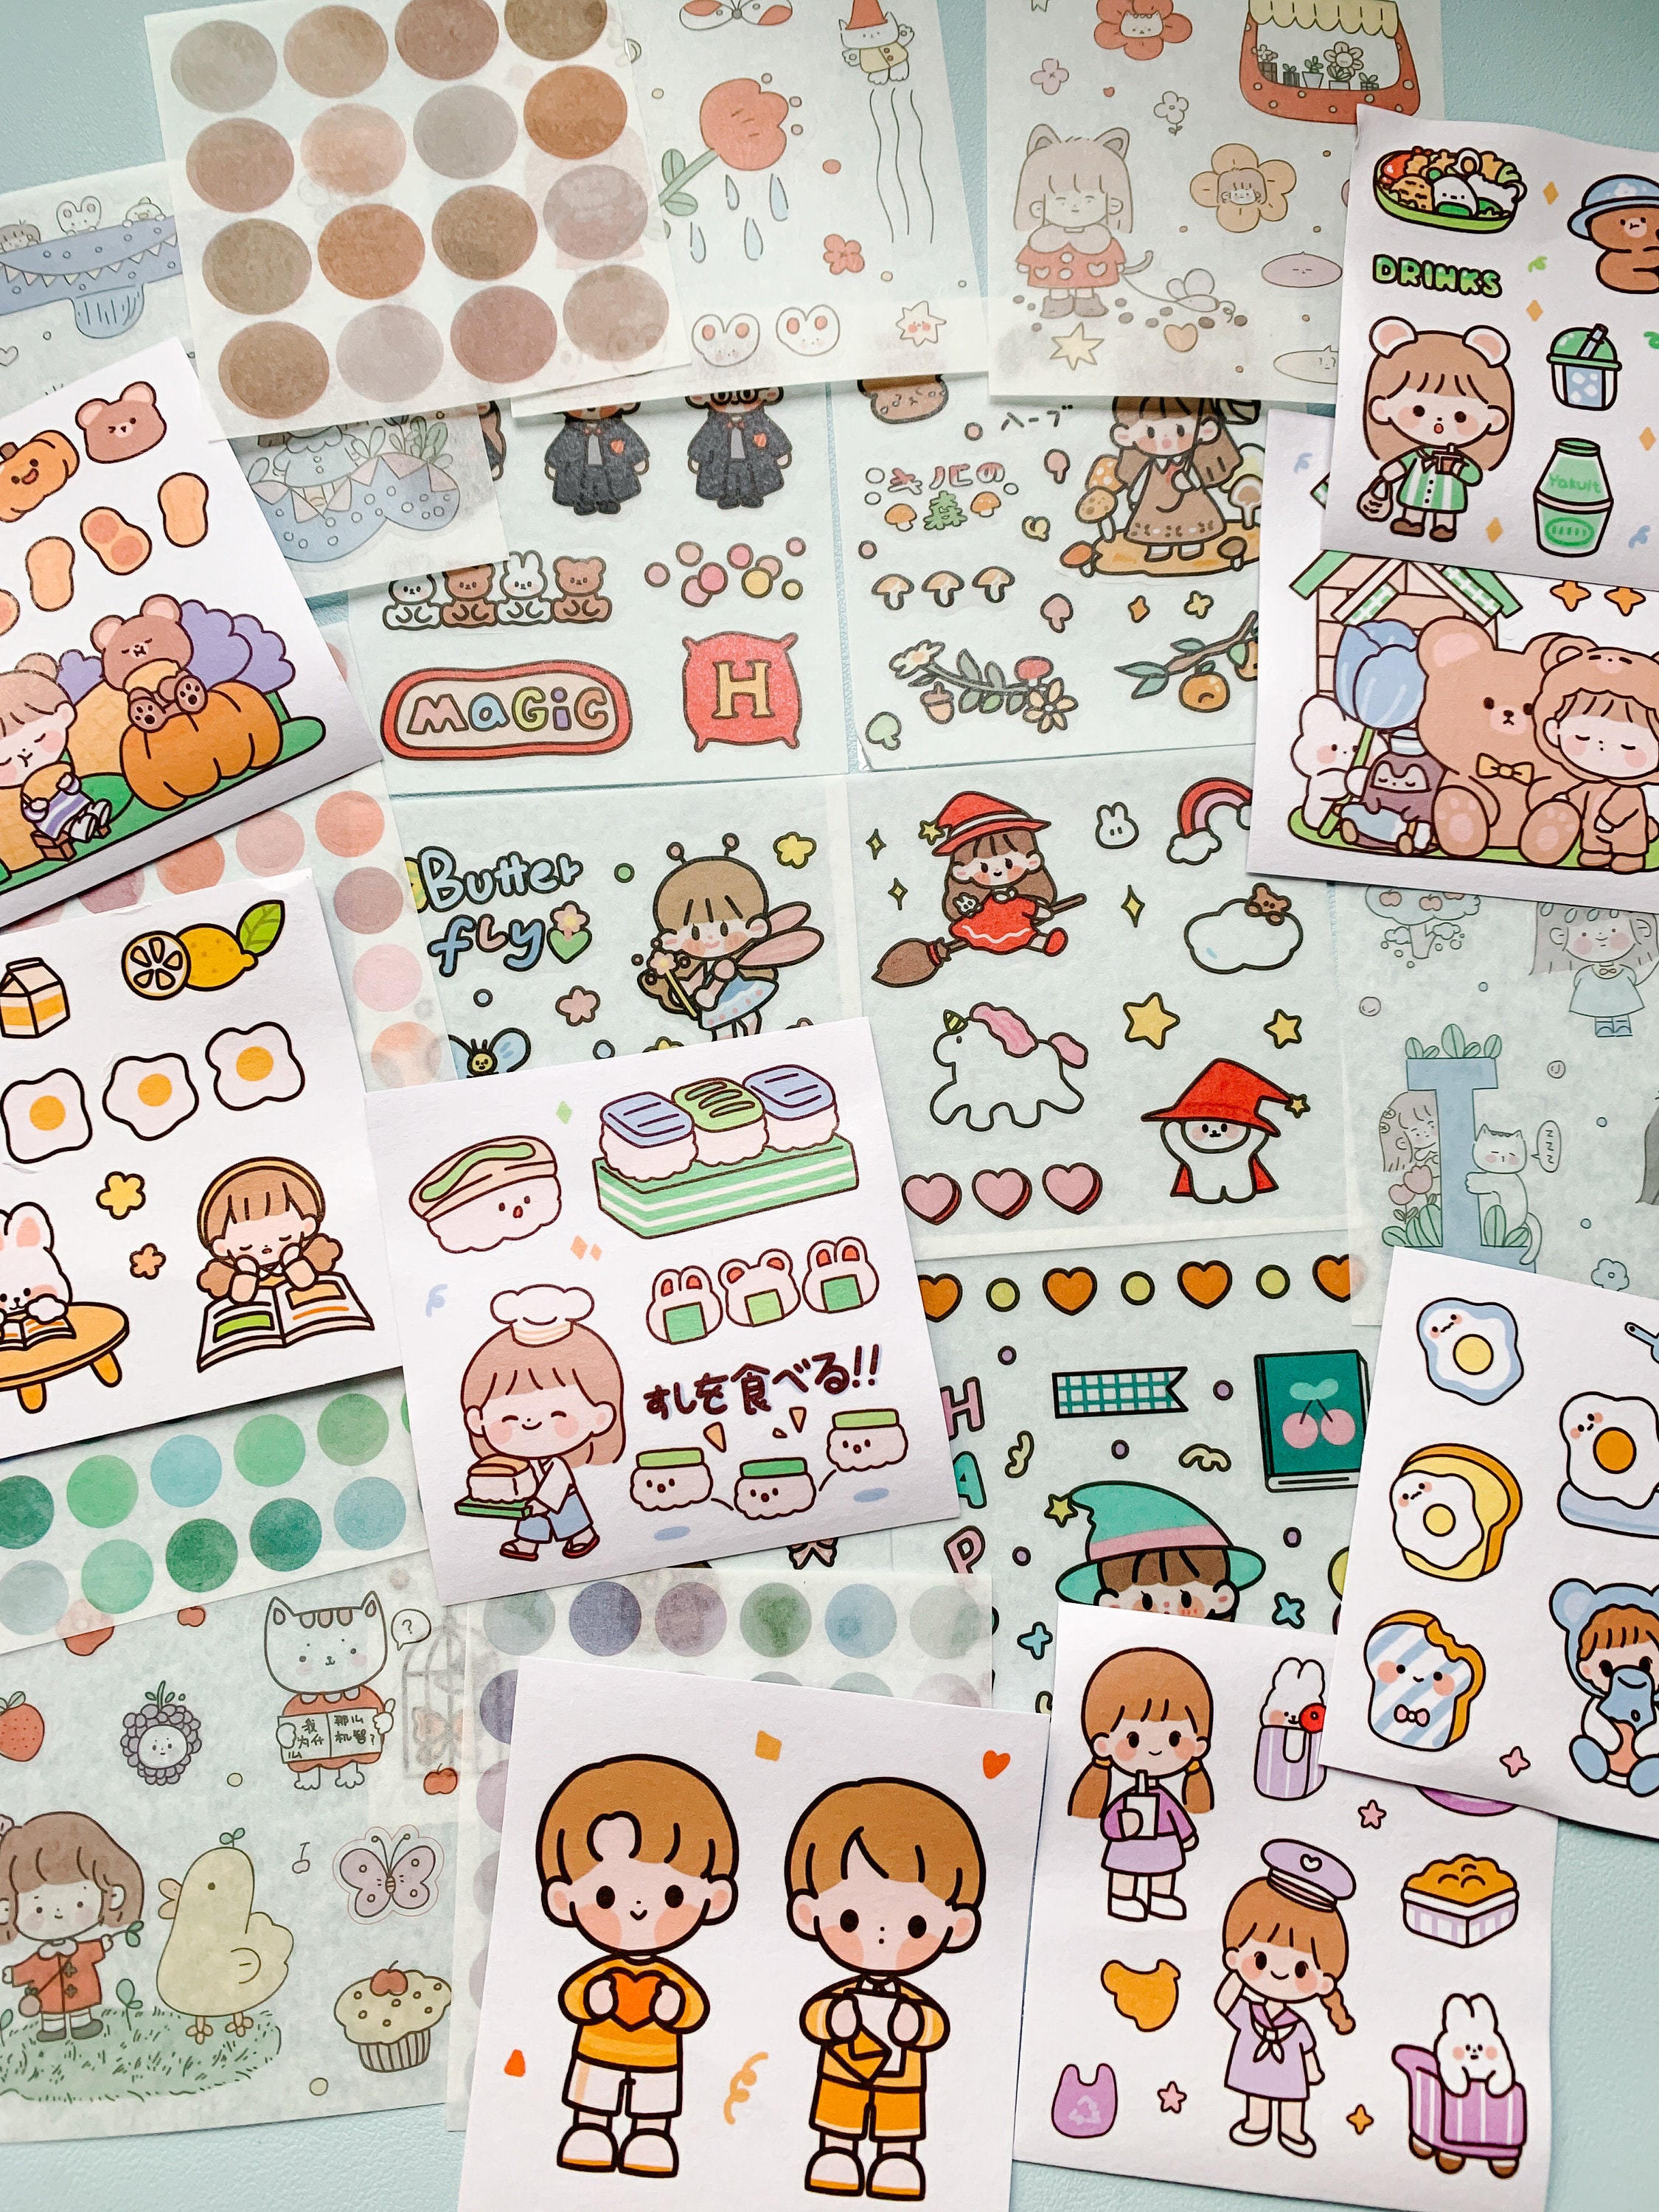 Kawaii 3D glittery stickers sheet grab bag set